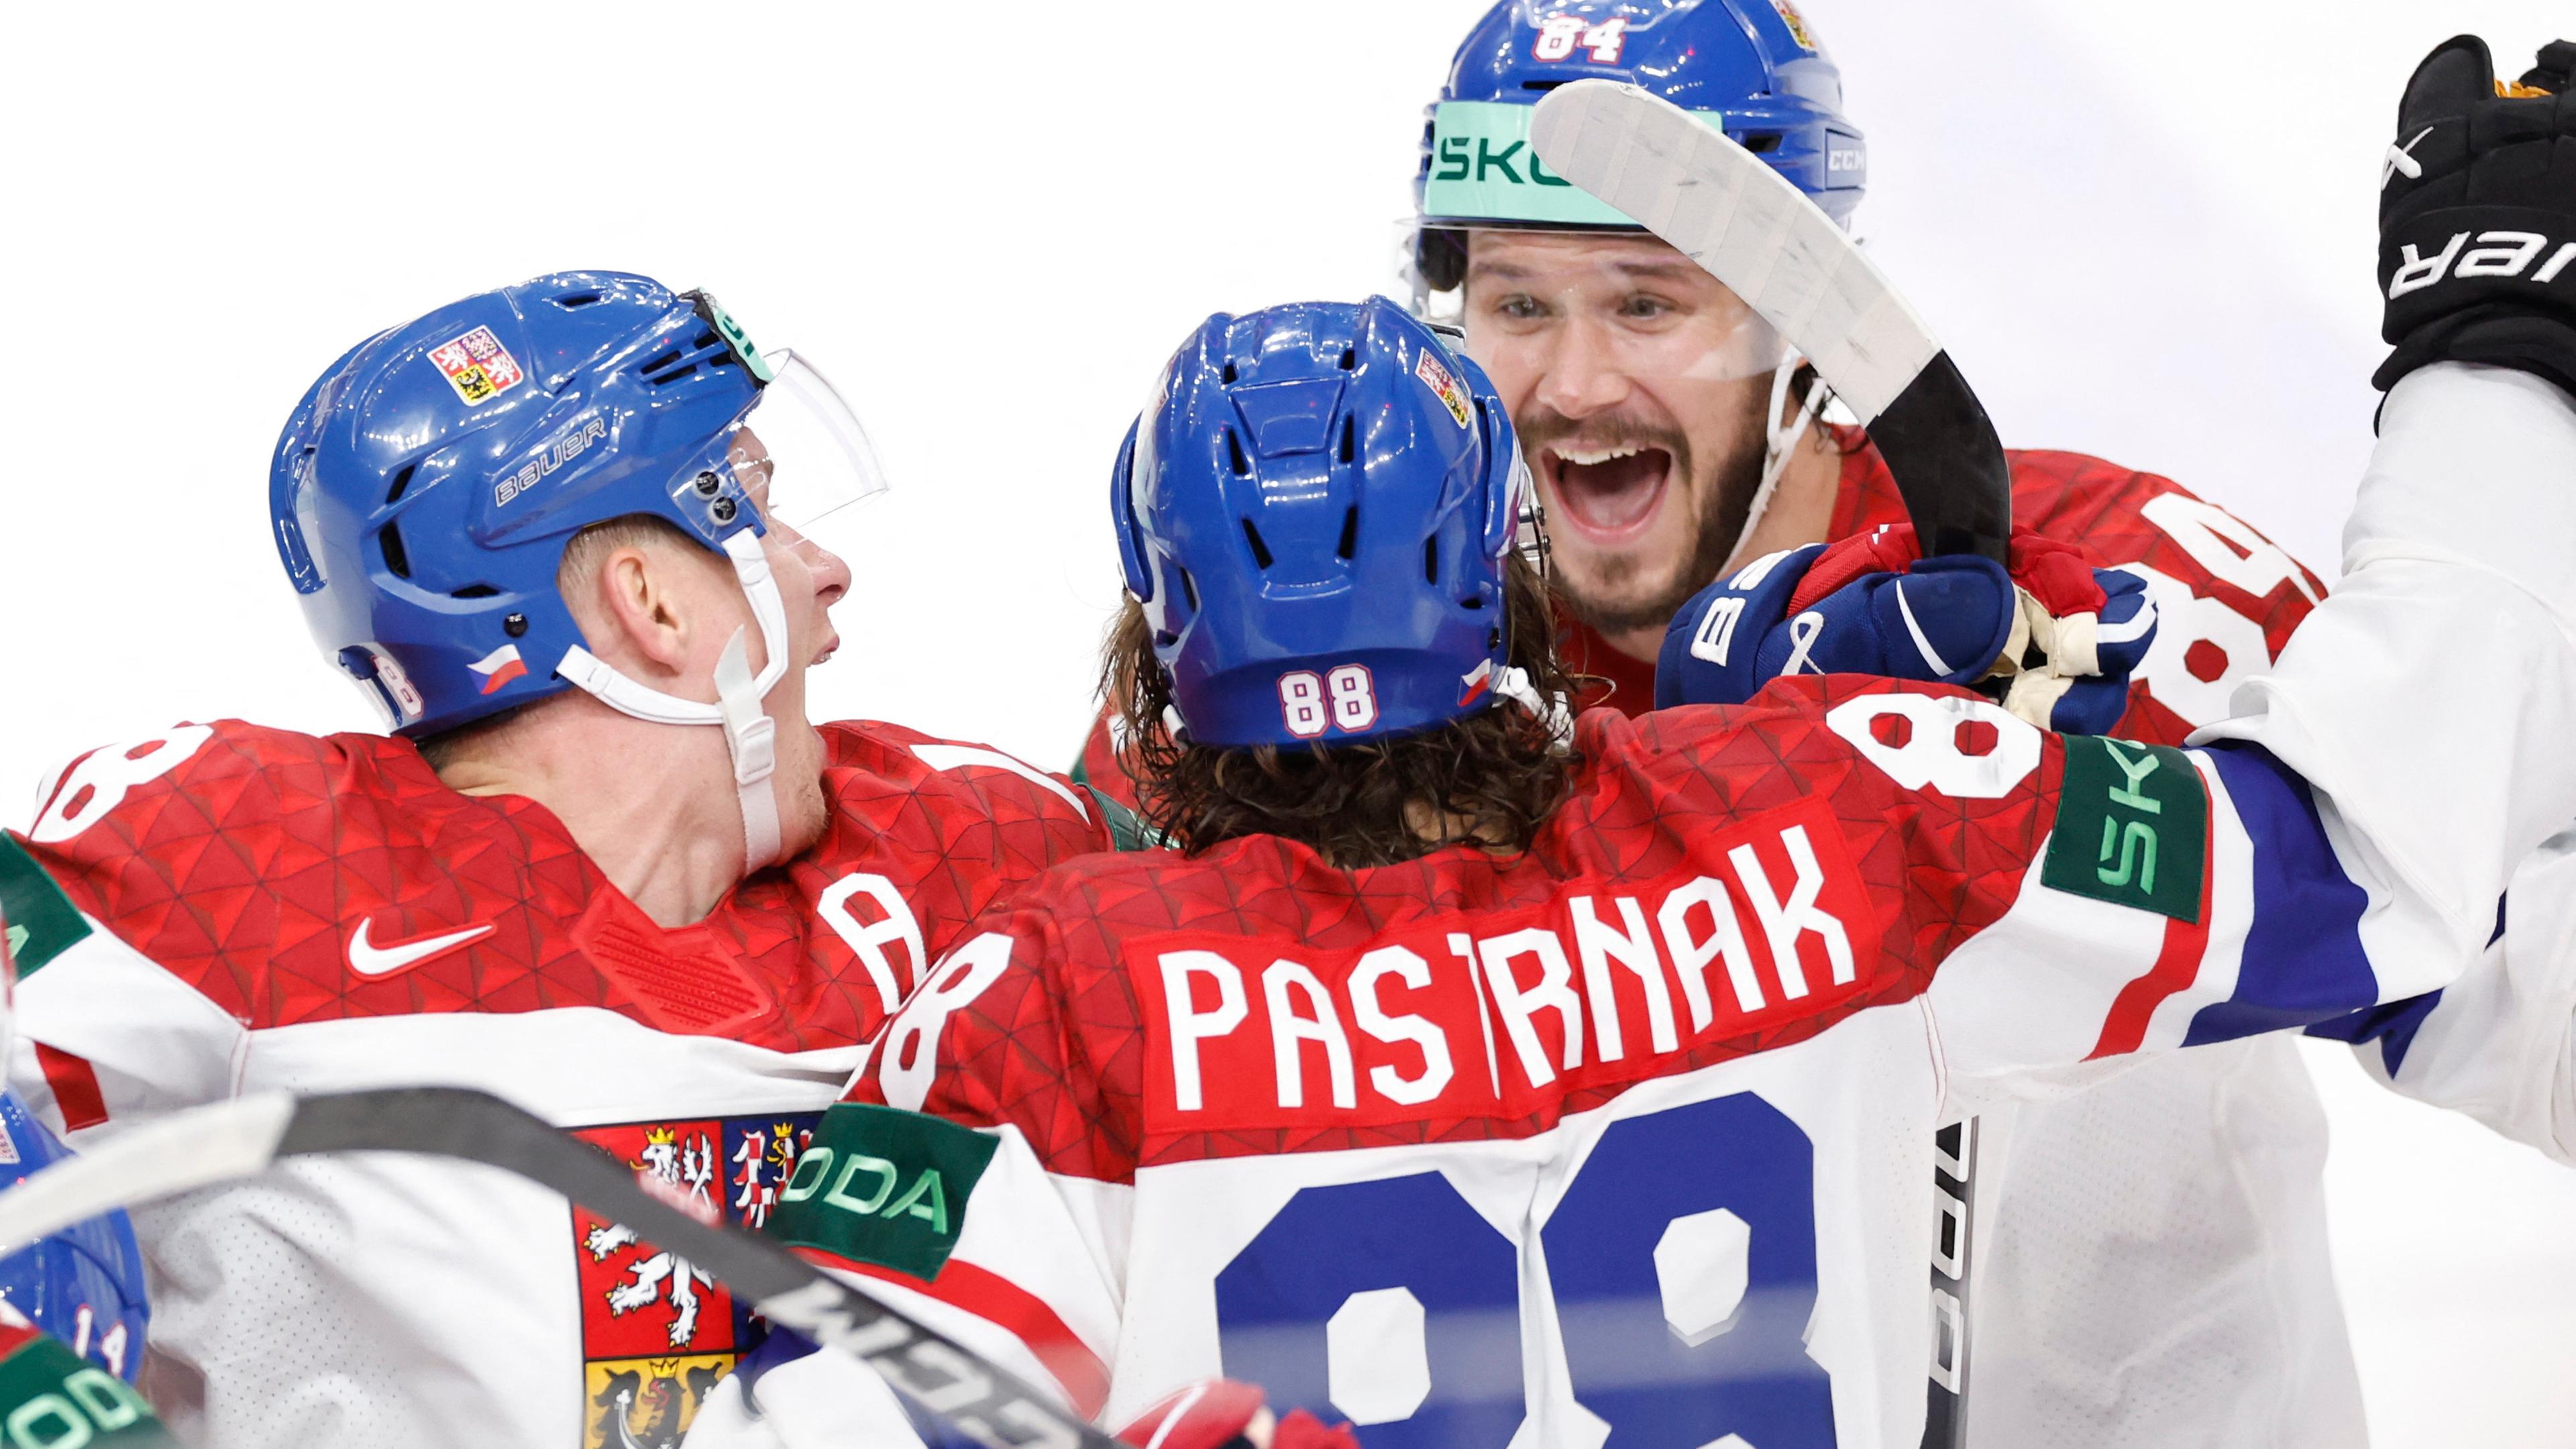 Tschechien gewinnt die Eishockey-WM